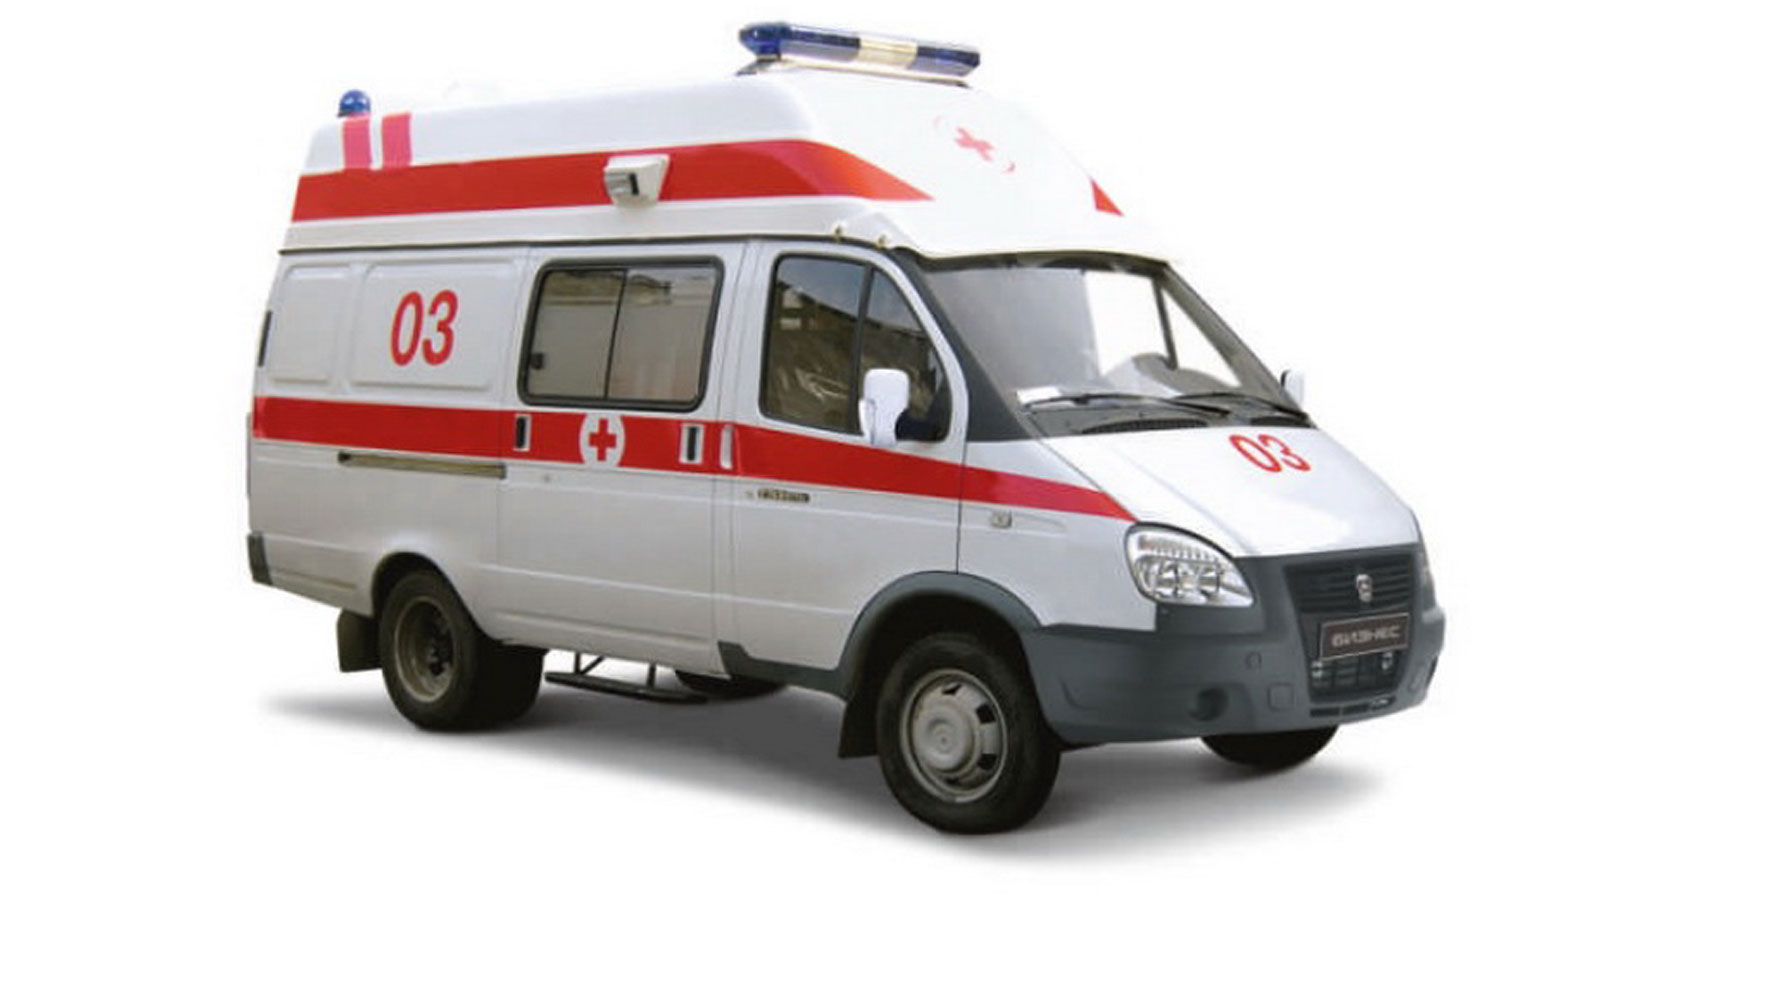 Автомобиль скорой медицинской помощи класса В на базе ГАЗ 3221 и ГАЗ 32217